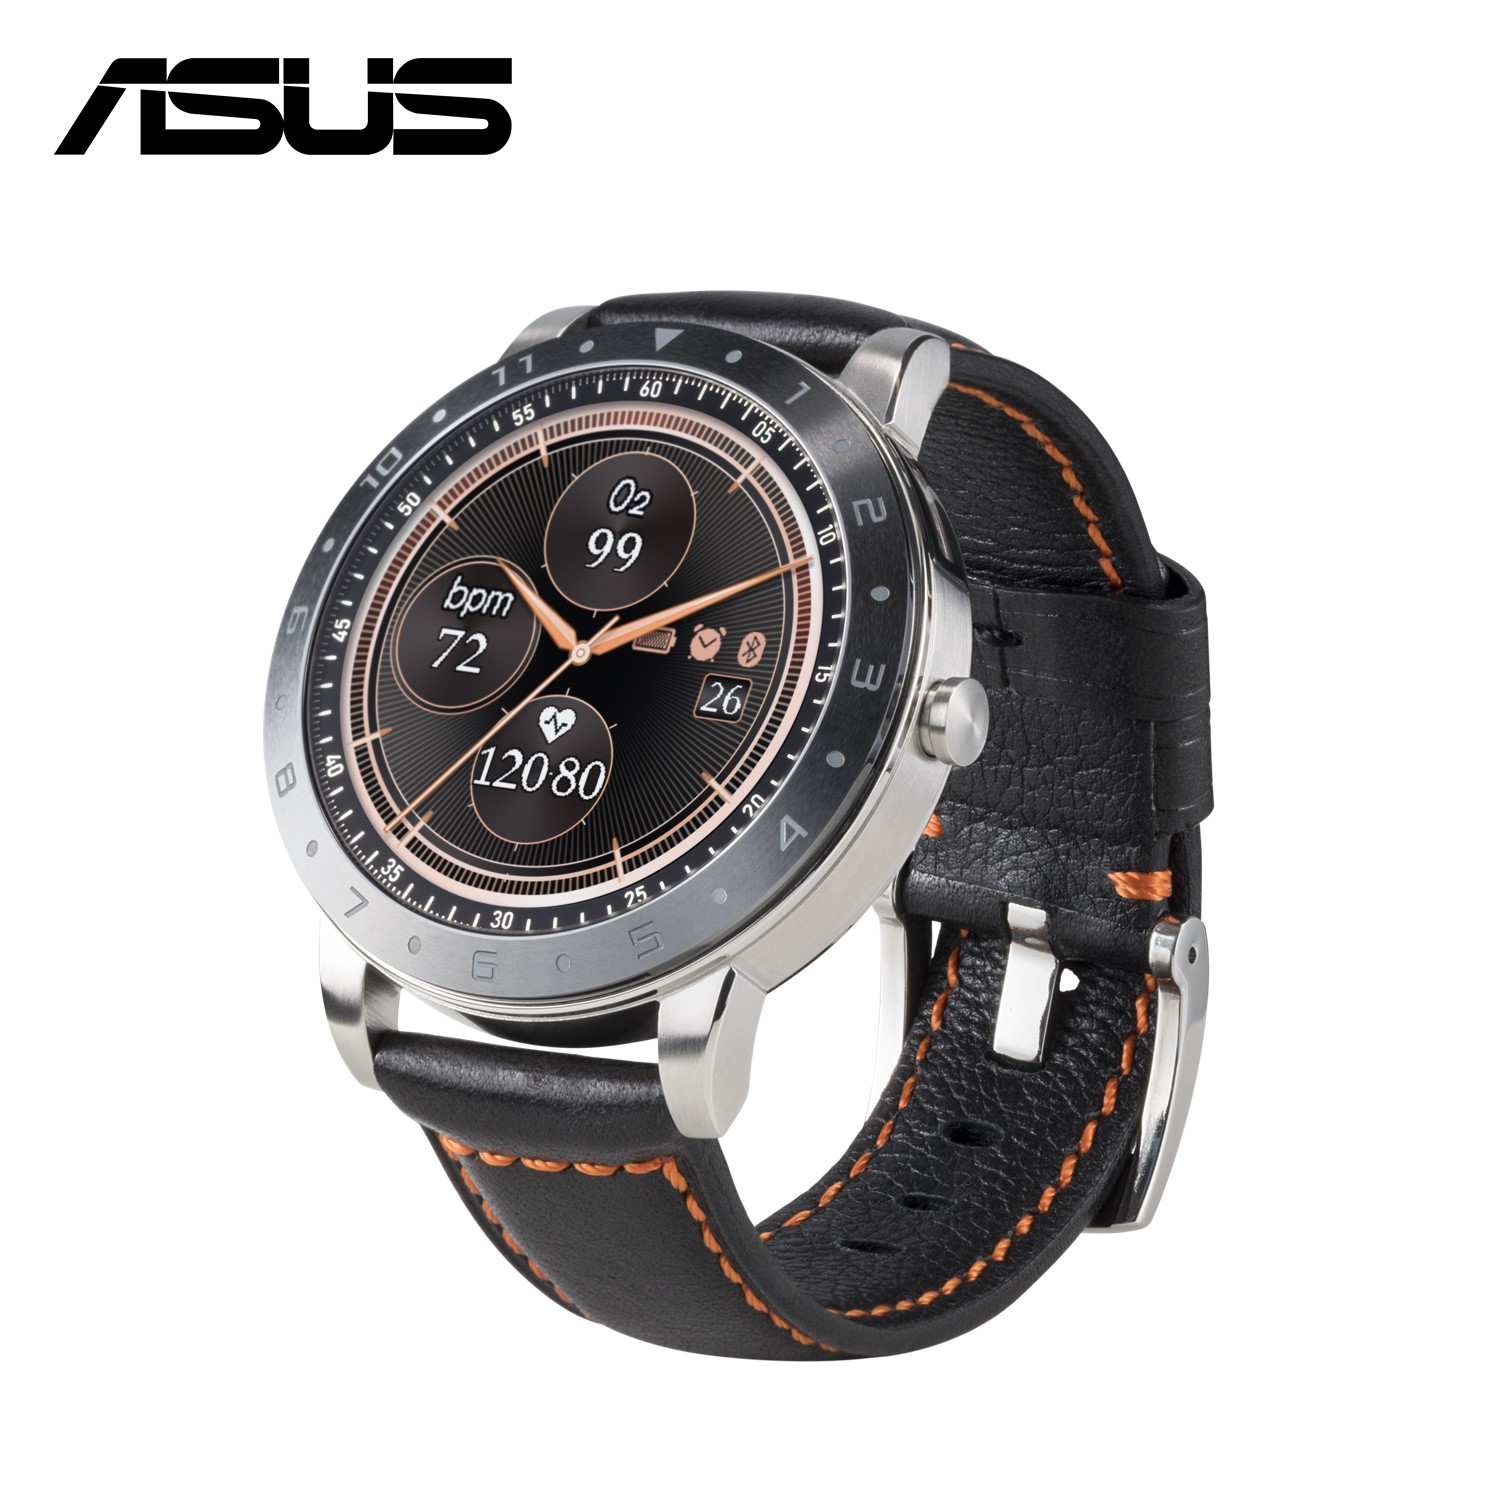 華碩 ASUS VivoWatch 5 智慧手錶(即時血氧偵測)